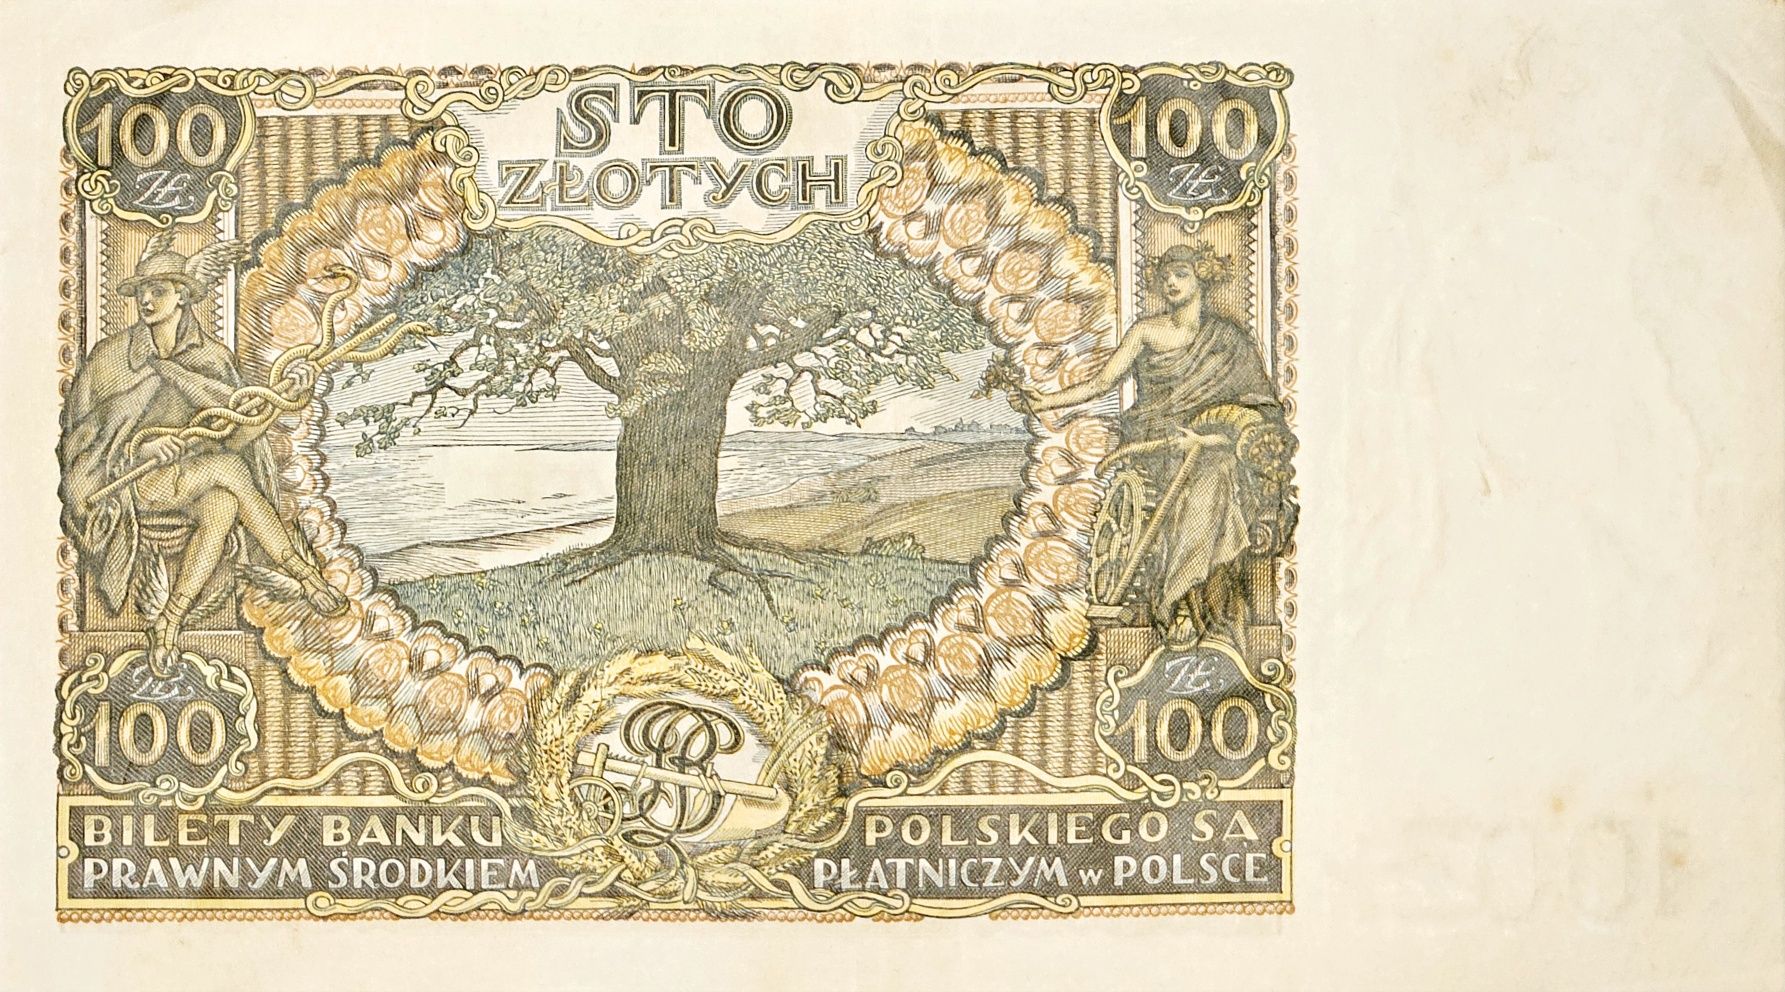 Banknot 100 zł z 2 czerwca 1932 r.